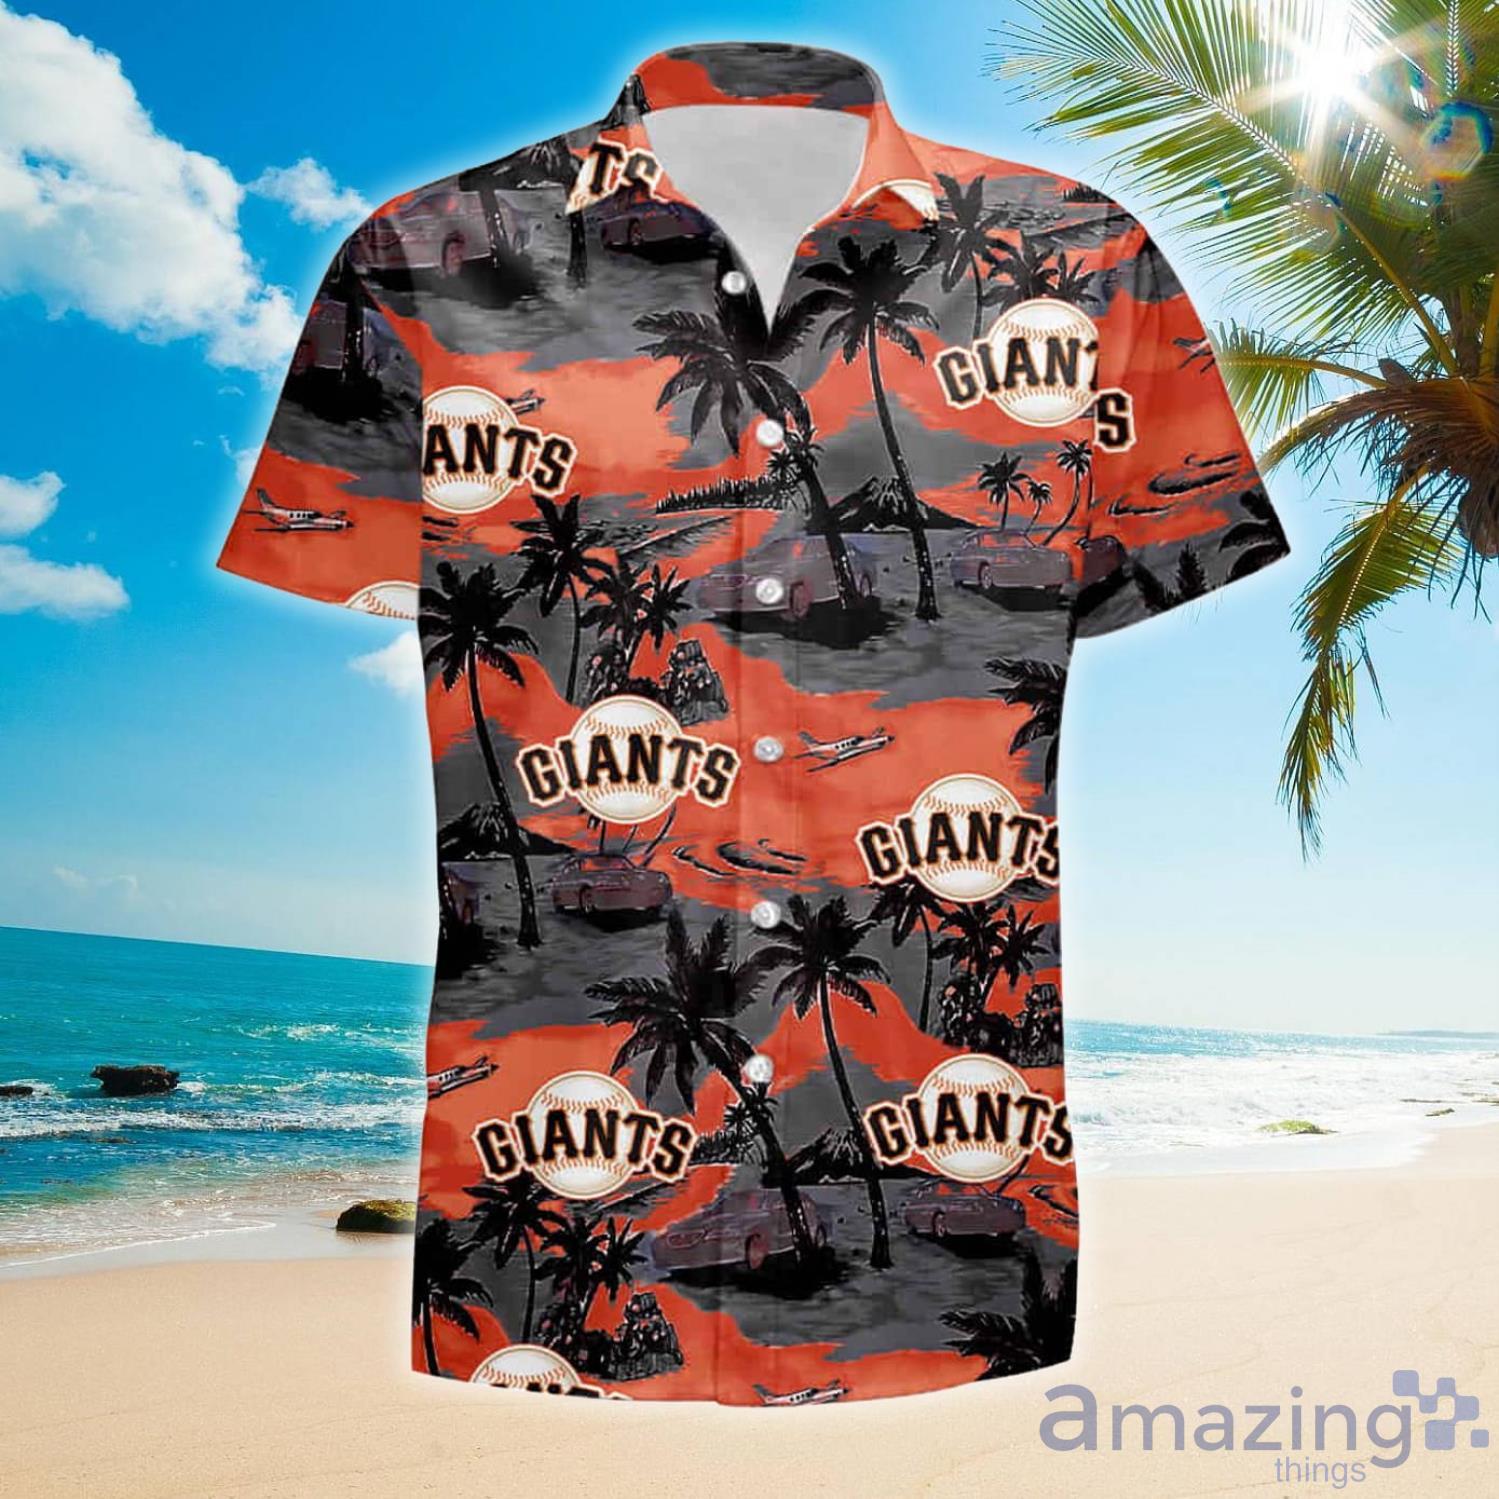 MLB Polo Shirt - San Francisco Giants, Large